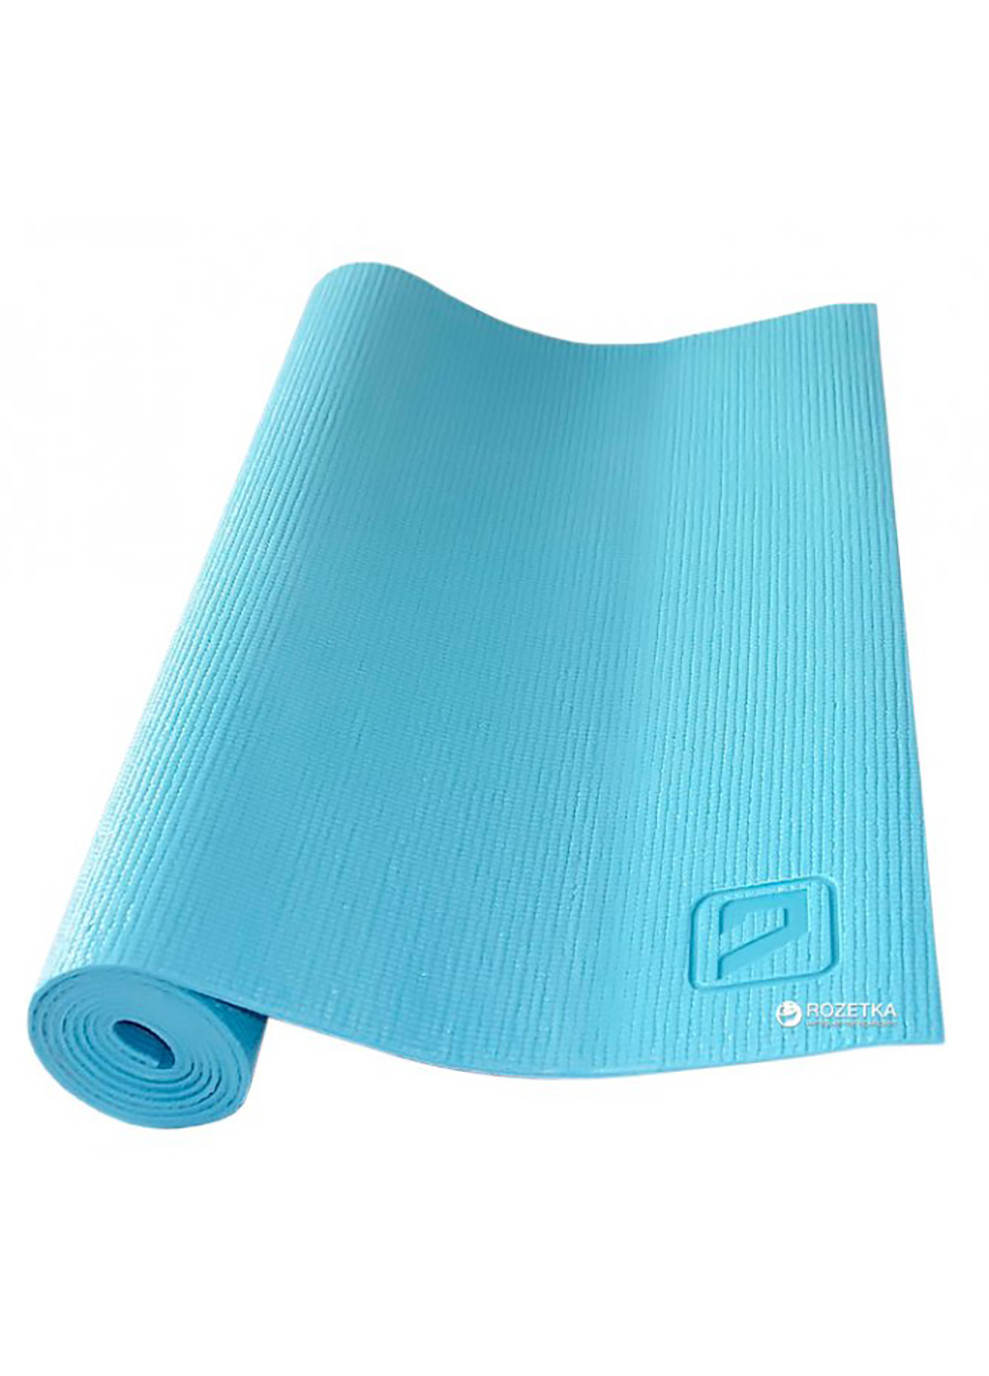 Коврик для йоги PVC YOGA MAT синий 173x61x0.4см LiveUp (258131900)